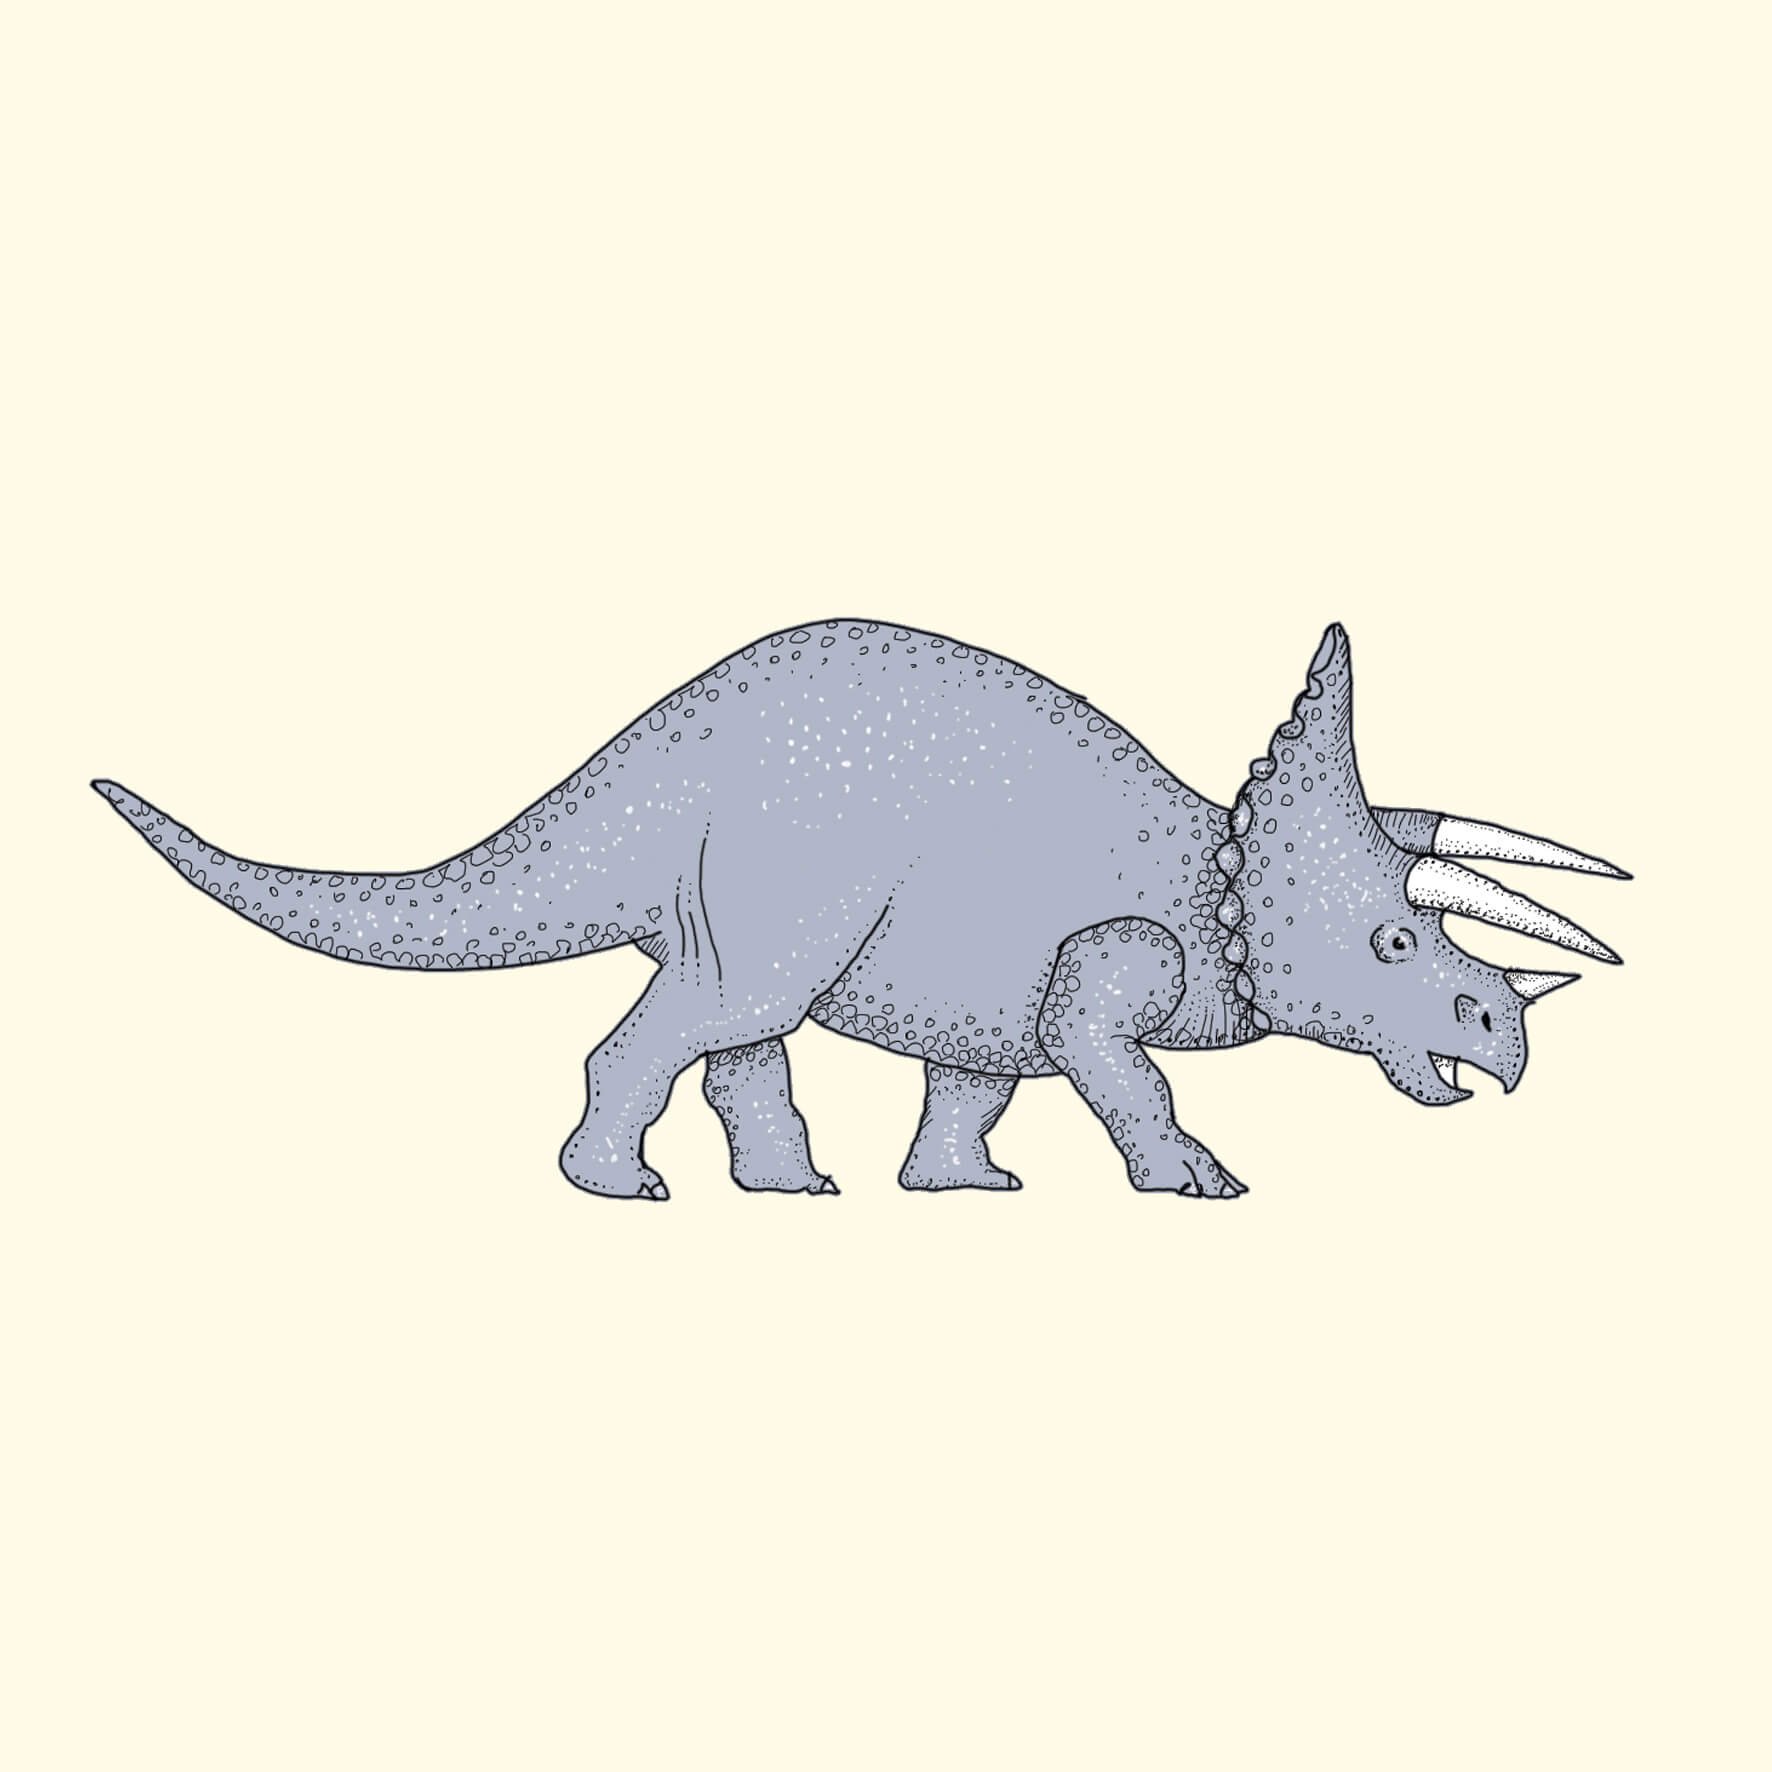 triceratops dinosaur illustration.jpg